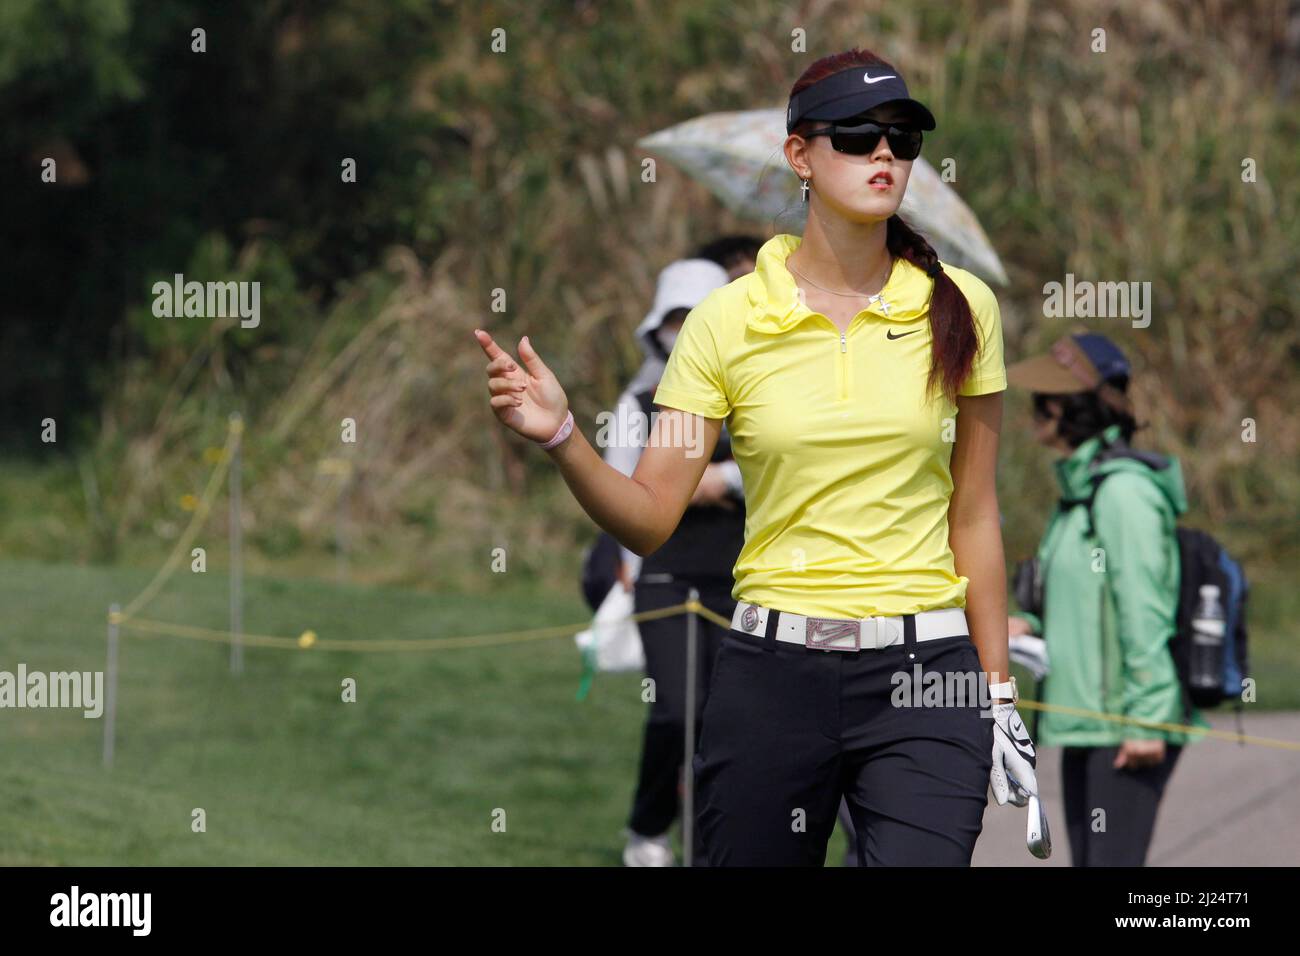 8 oct 2011-Incheon, Corée du Sud-WIE, Michelle des Etats-Unis, joue sur le 3th trous lors du championnat LPGA par Hana Bank au club de golf SKY72 à Incheon le 8 oct 2011, Corée du Sud. Banque D'Images